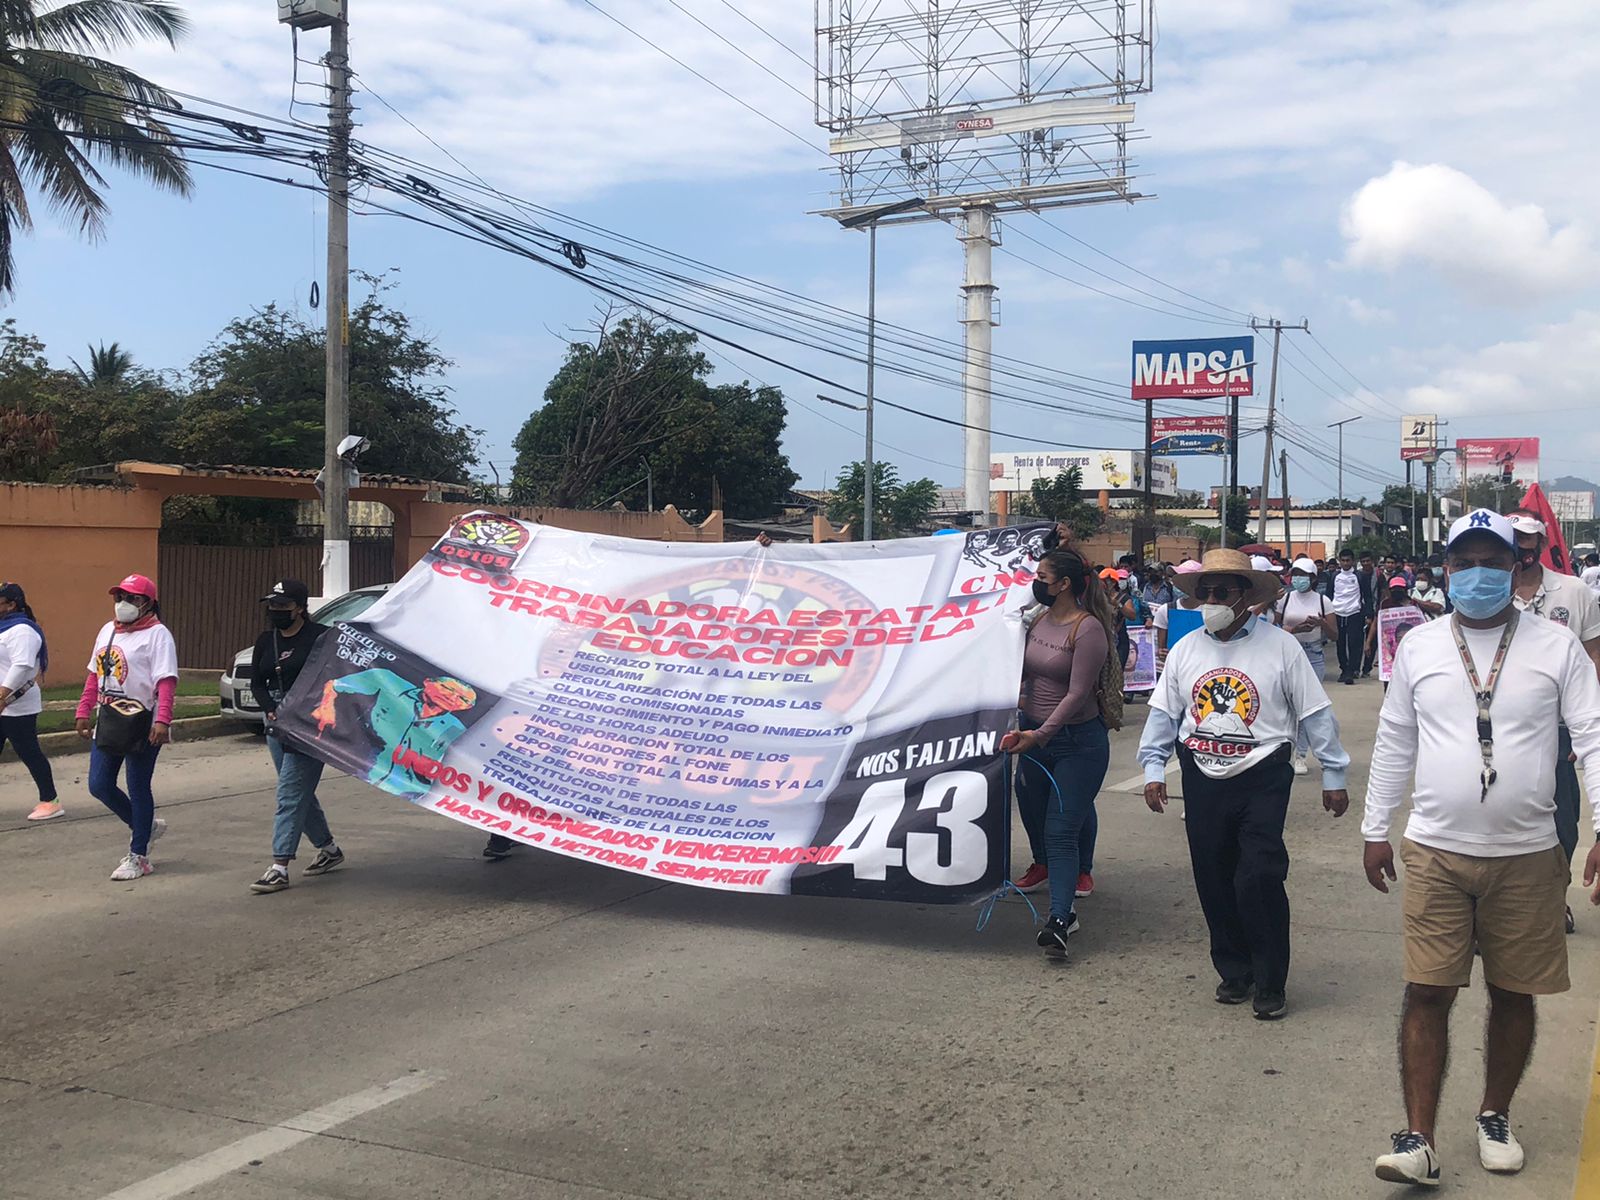 Marchan Cetegistas por Bulevard de Las Naciones en Acapulco